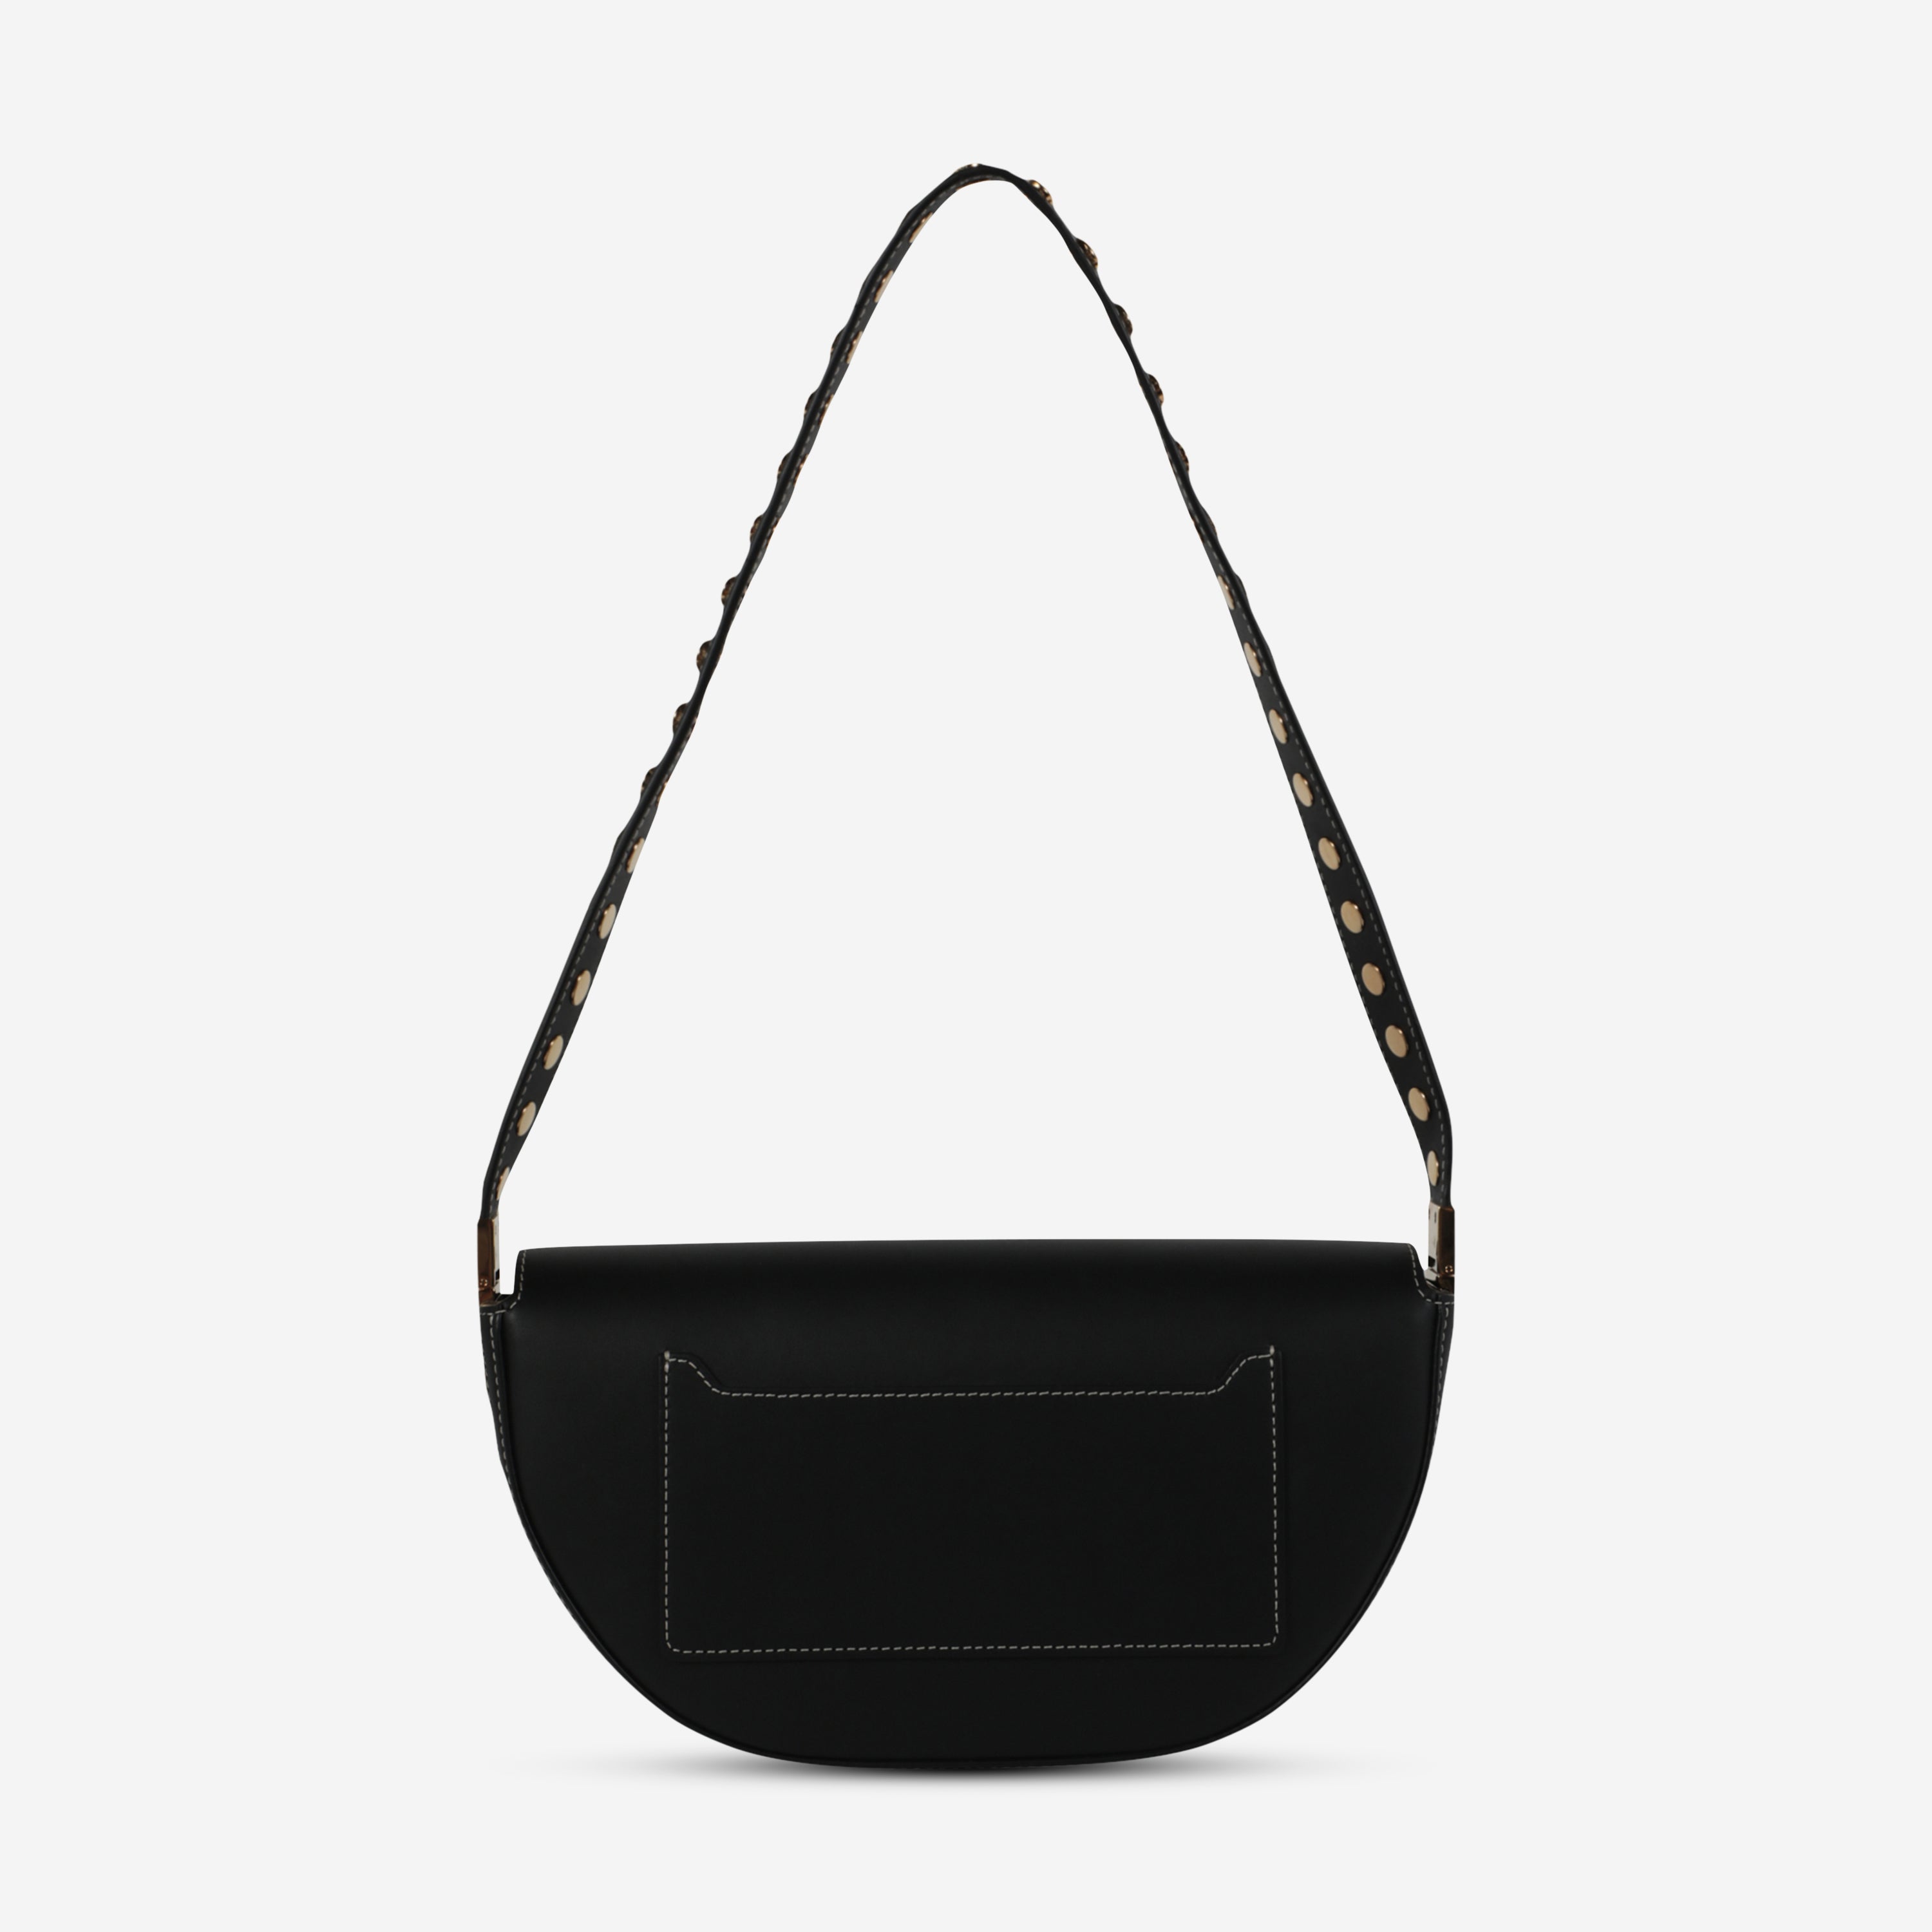 Burberry Black Leather Women's Shoulder Bag 8047013